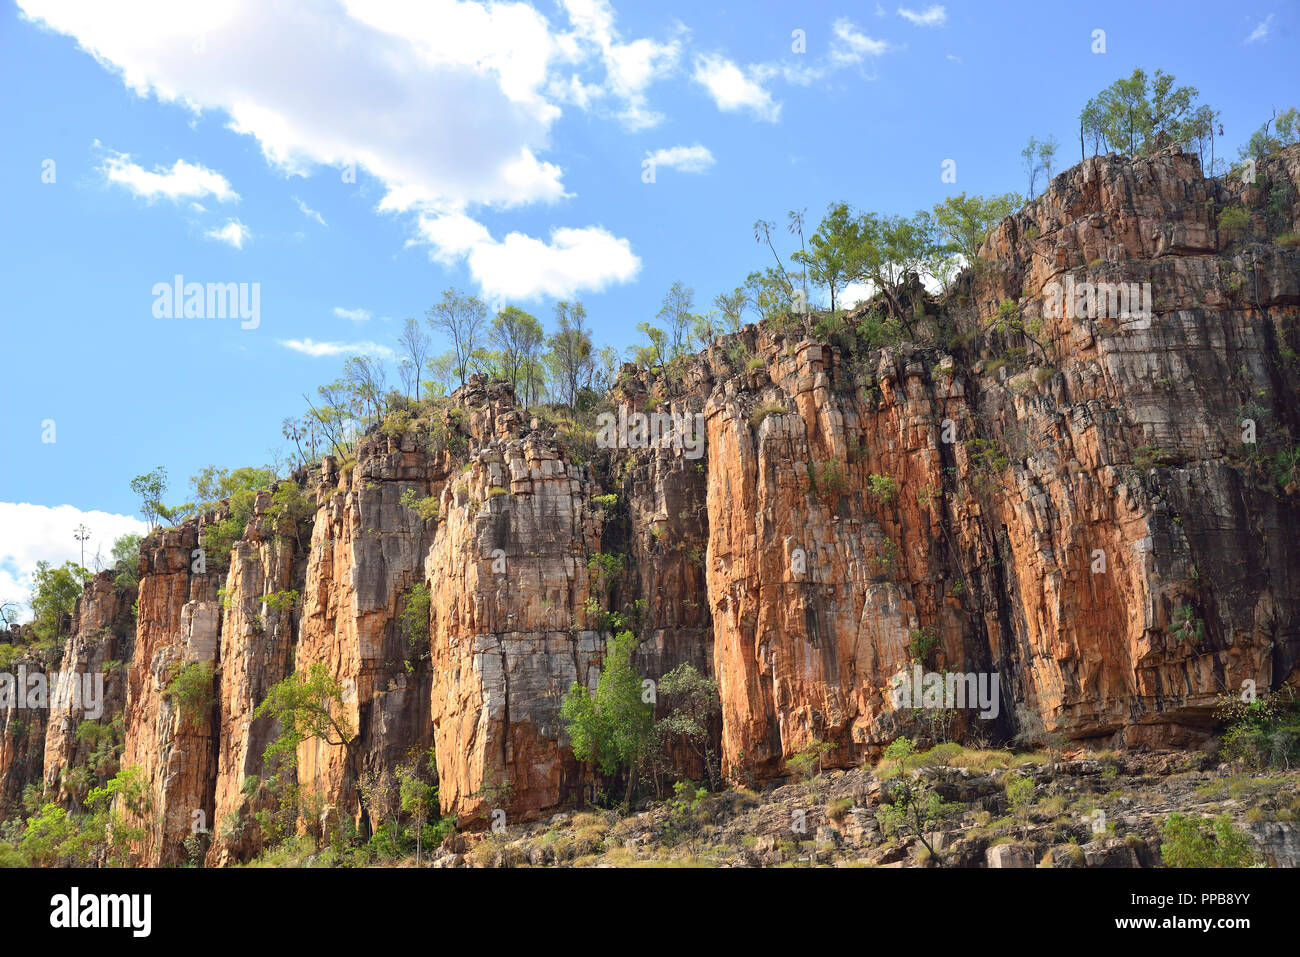 Katherine Gorge, le parc national de Nitmiluk, Katherine où la Katherine River traverse 13 gorges de grès, Territoire du Nord, Australie Banque D'Images